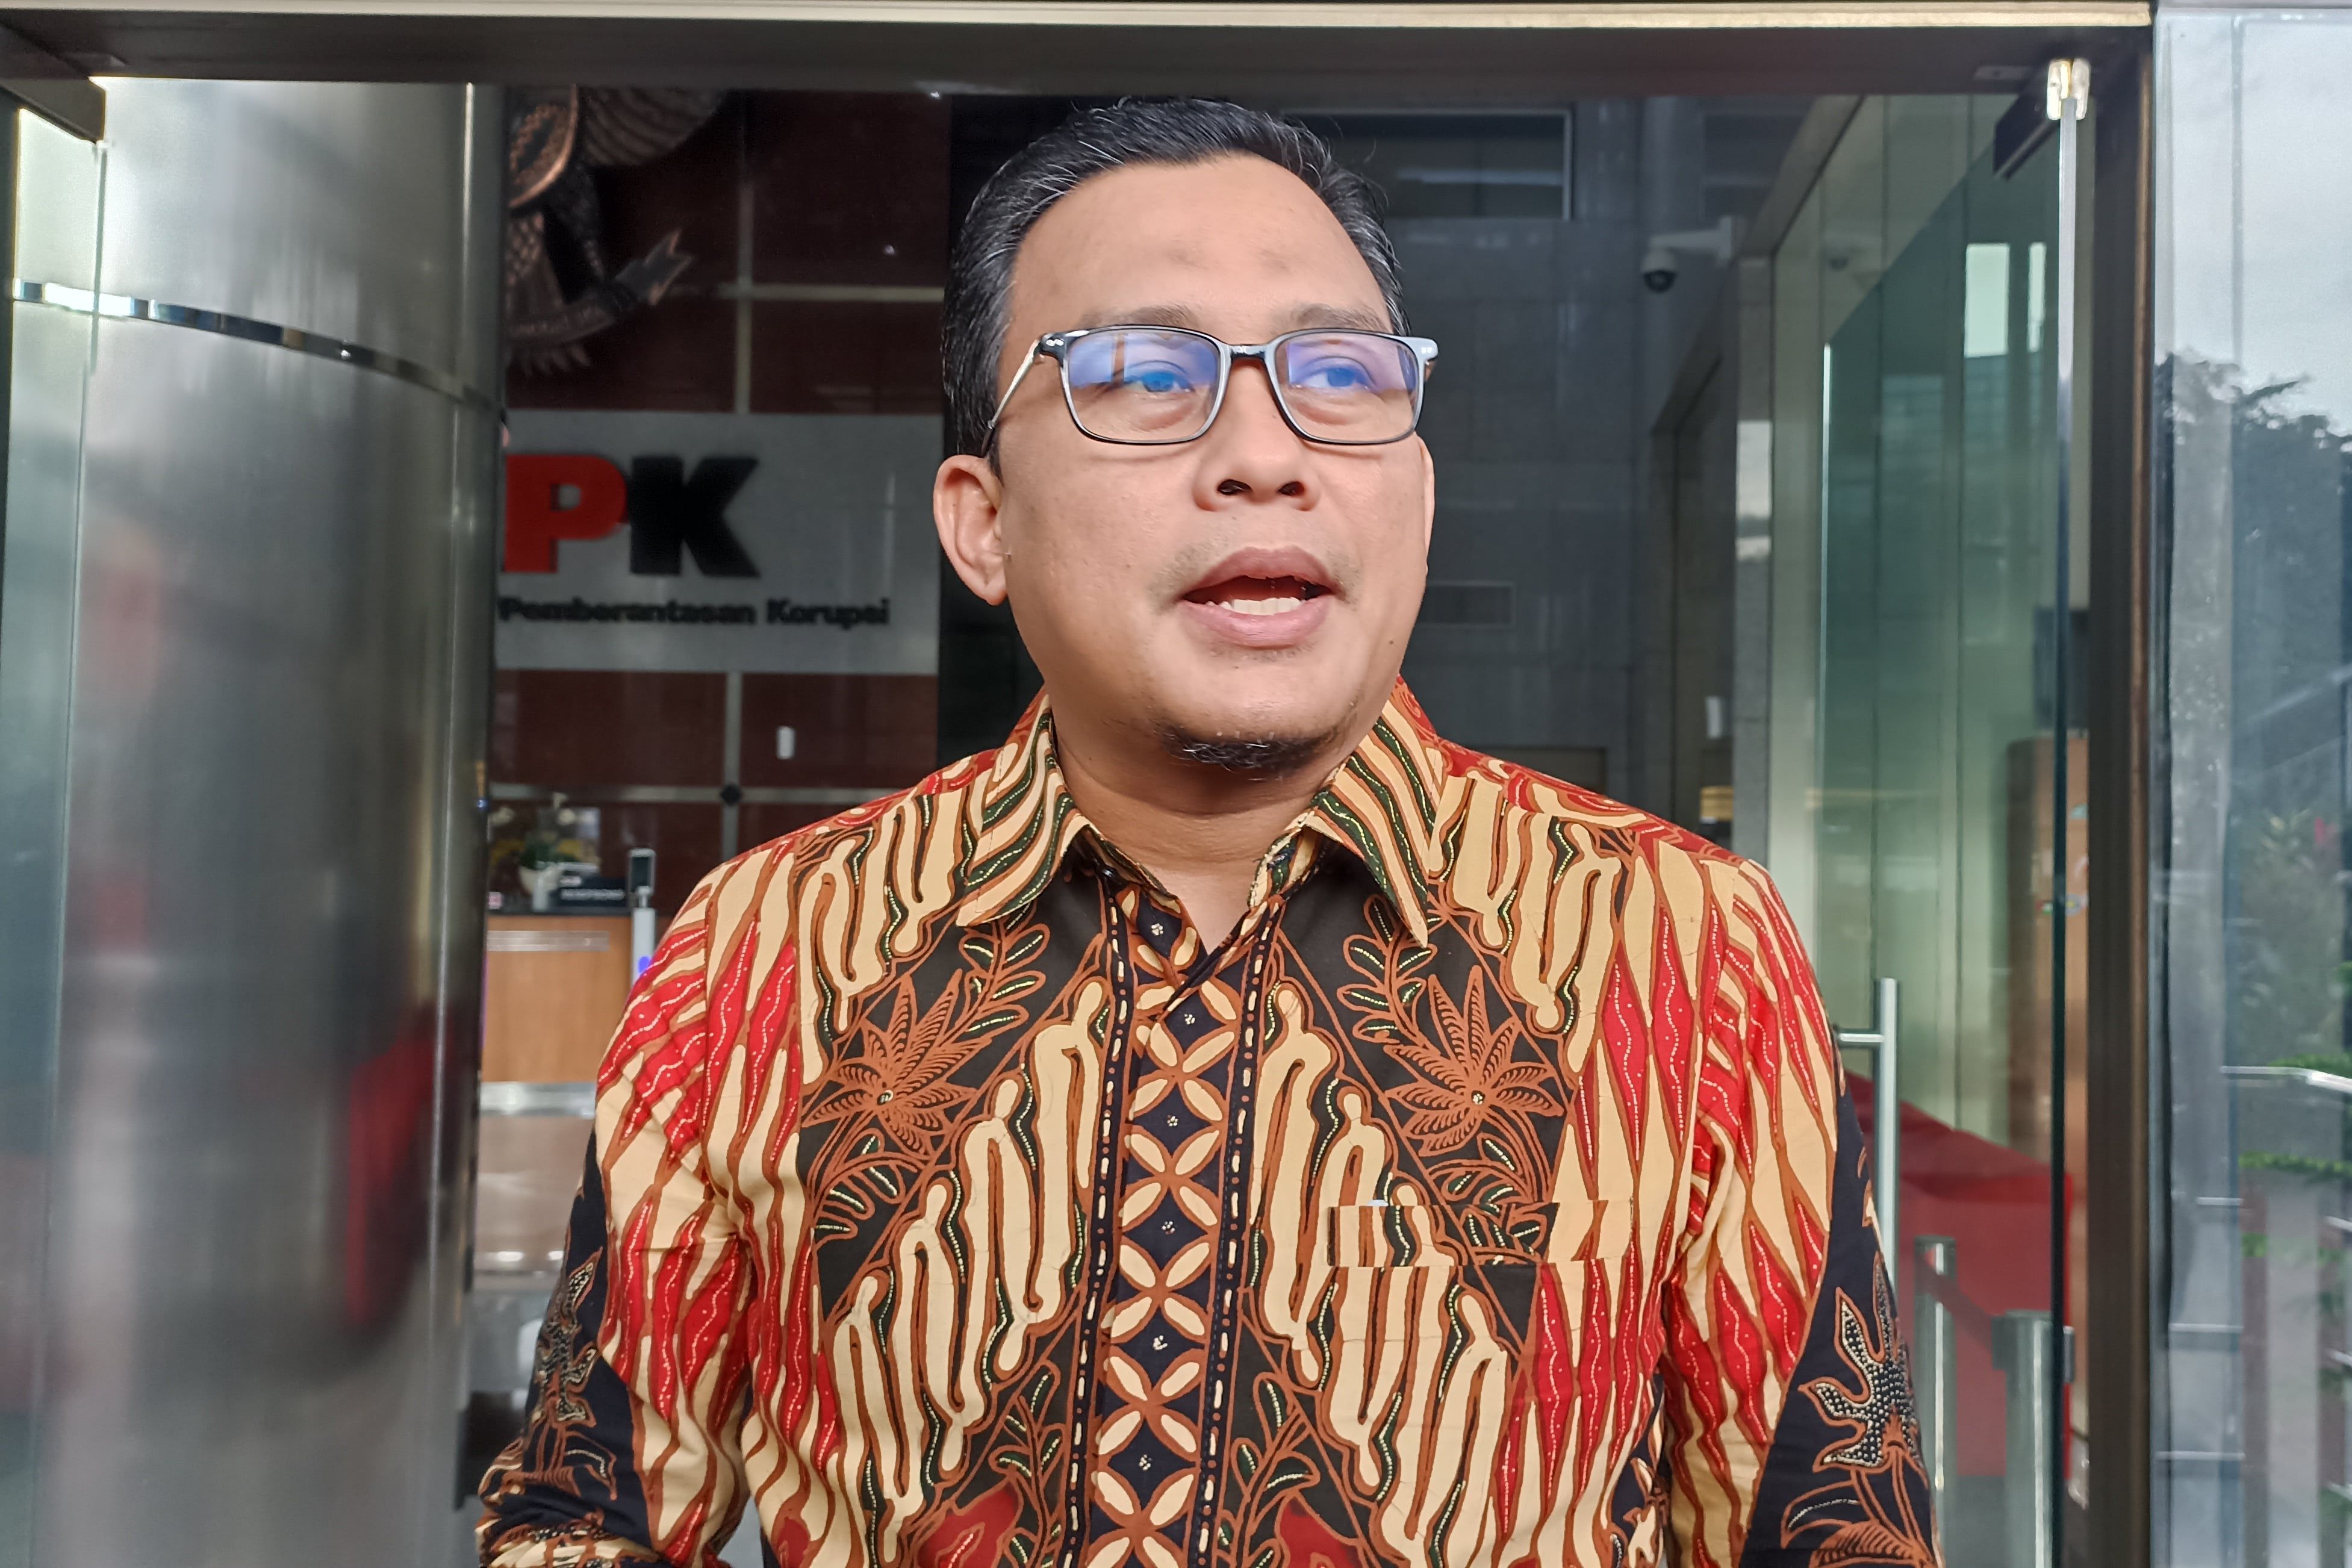 Wakil Ketua KPK Ajukan Masa Jabatan Jadi 5 Tahun, KPK: Itu Sikap Pribadi